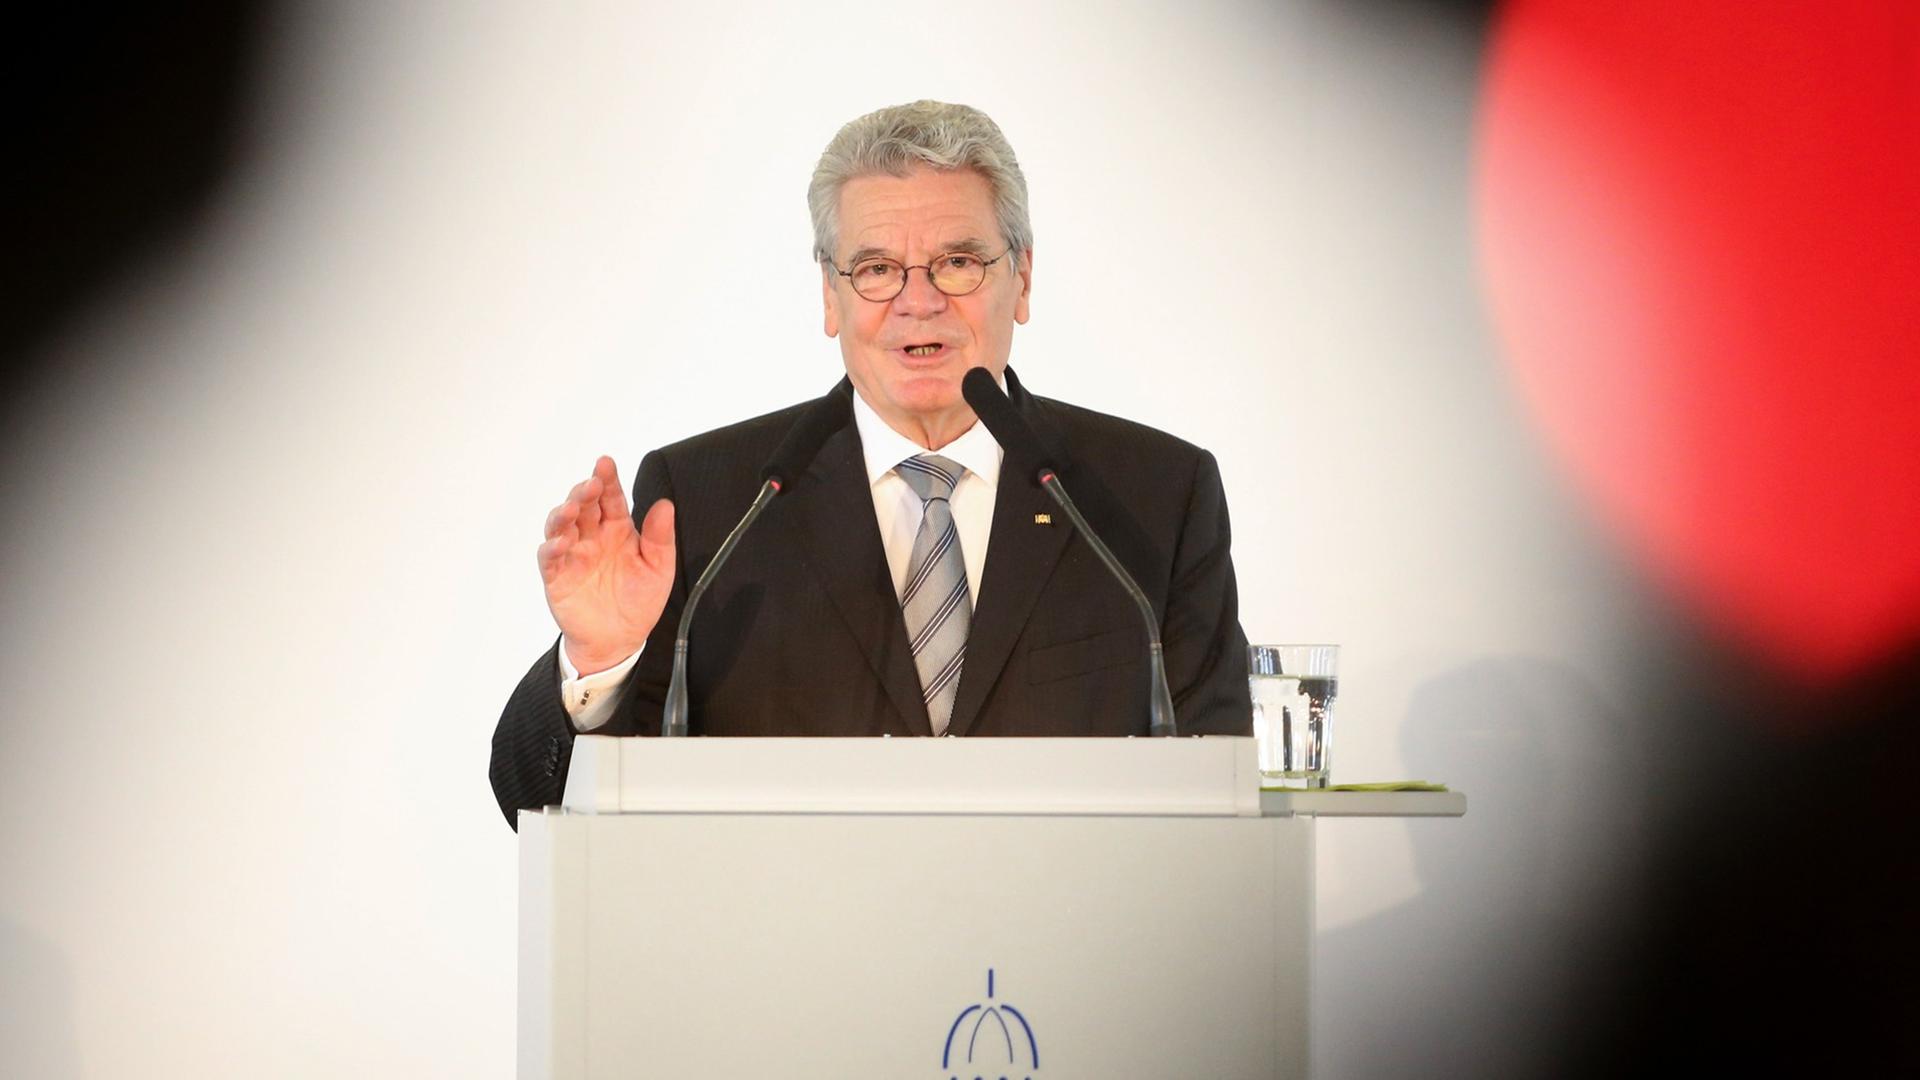 Bundespräsident Joachim Gauck spricht am 30.06.2014 in Berlin im Französischen Dom beim 14. Berliner Symposium zum Flüchtlingsschutz der Evangelischen Akademie zu Berlin.